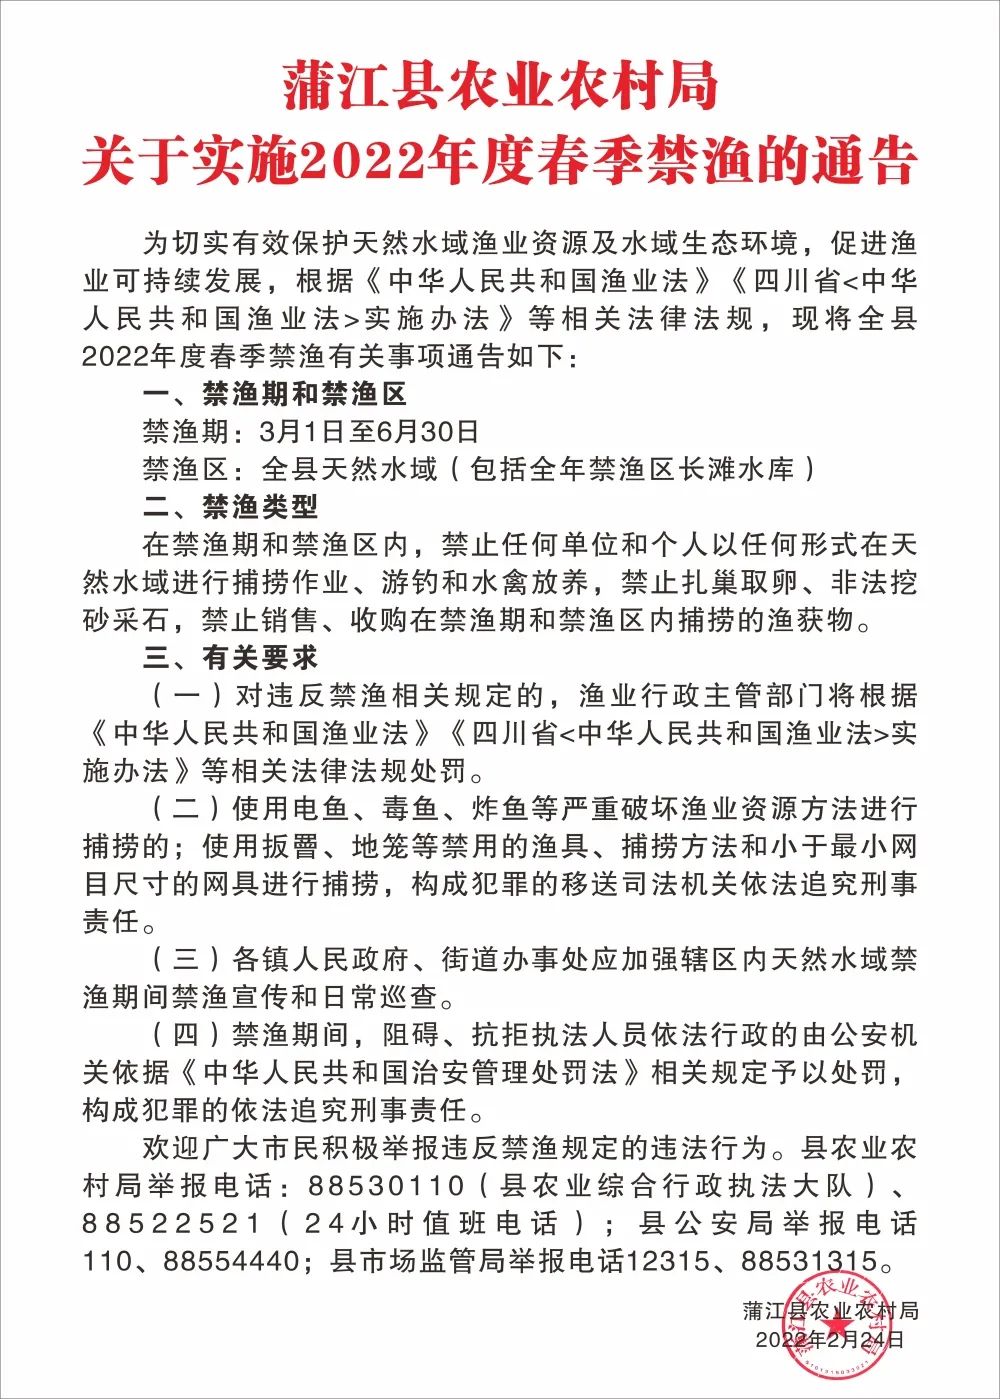 近日,蒲江县农业农村局发布了《关于实施2022年度春季禁渔的通告》,从